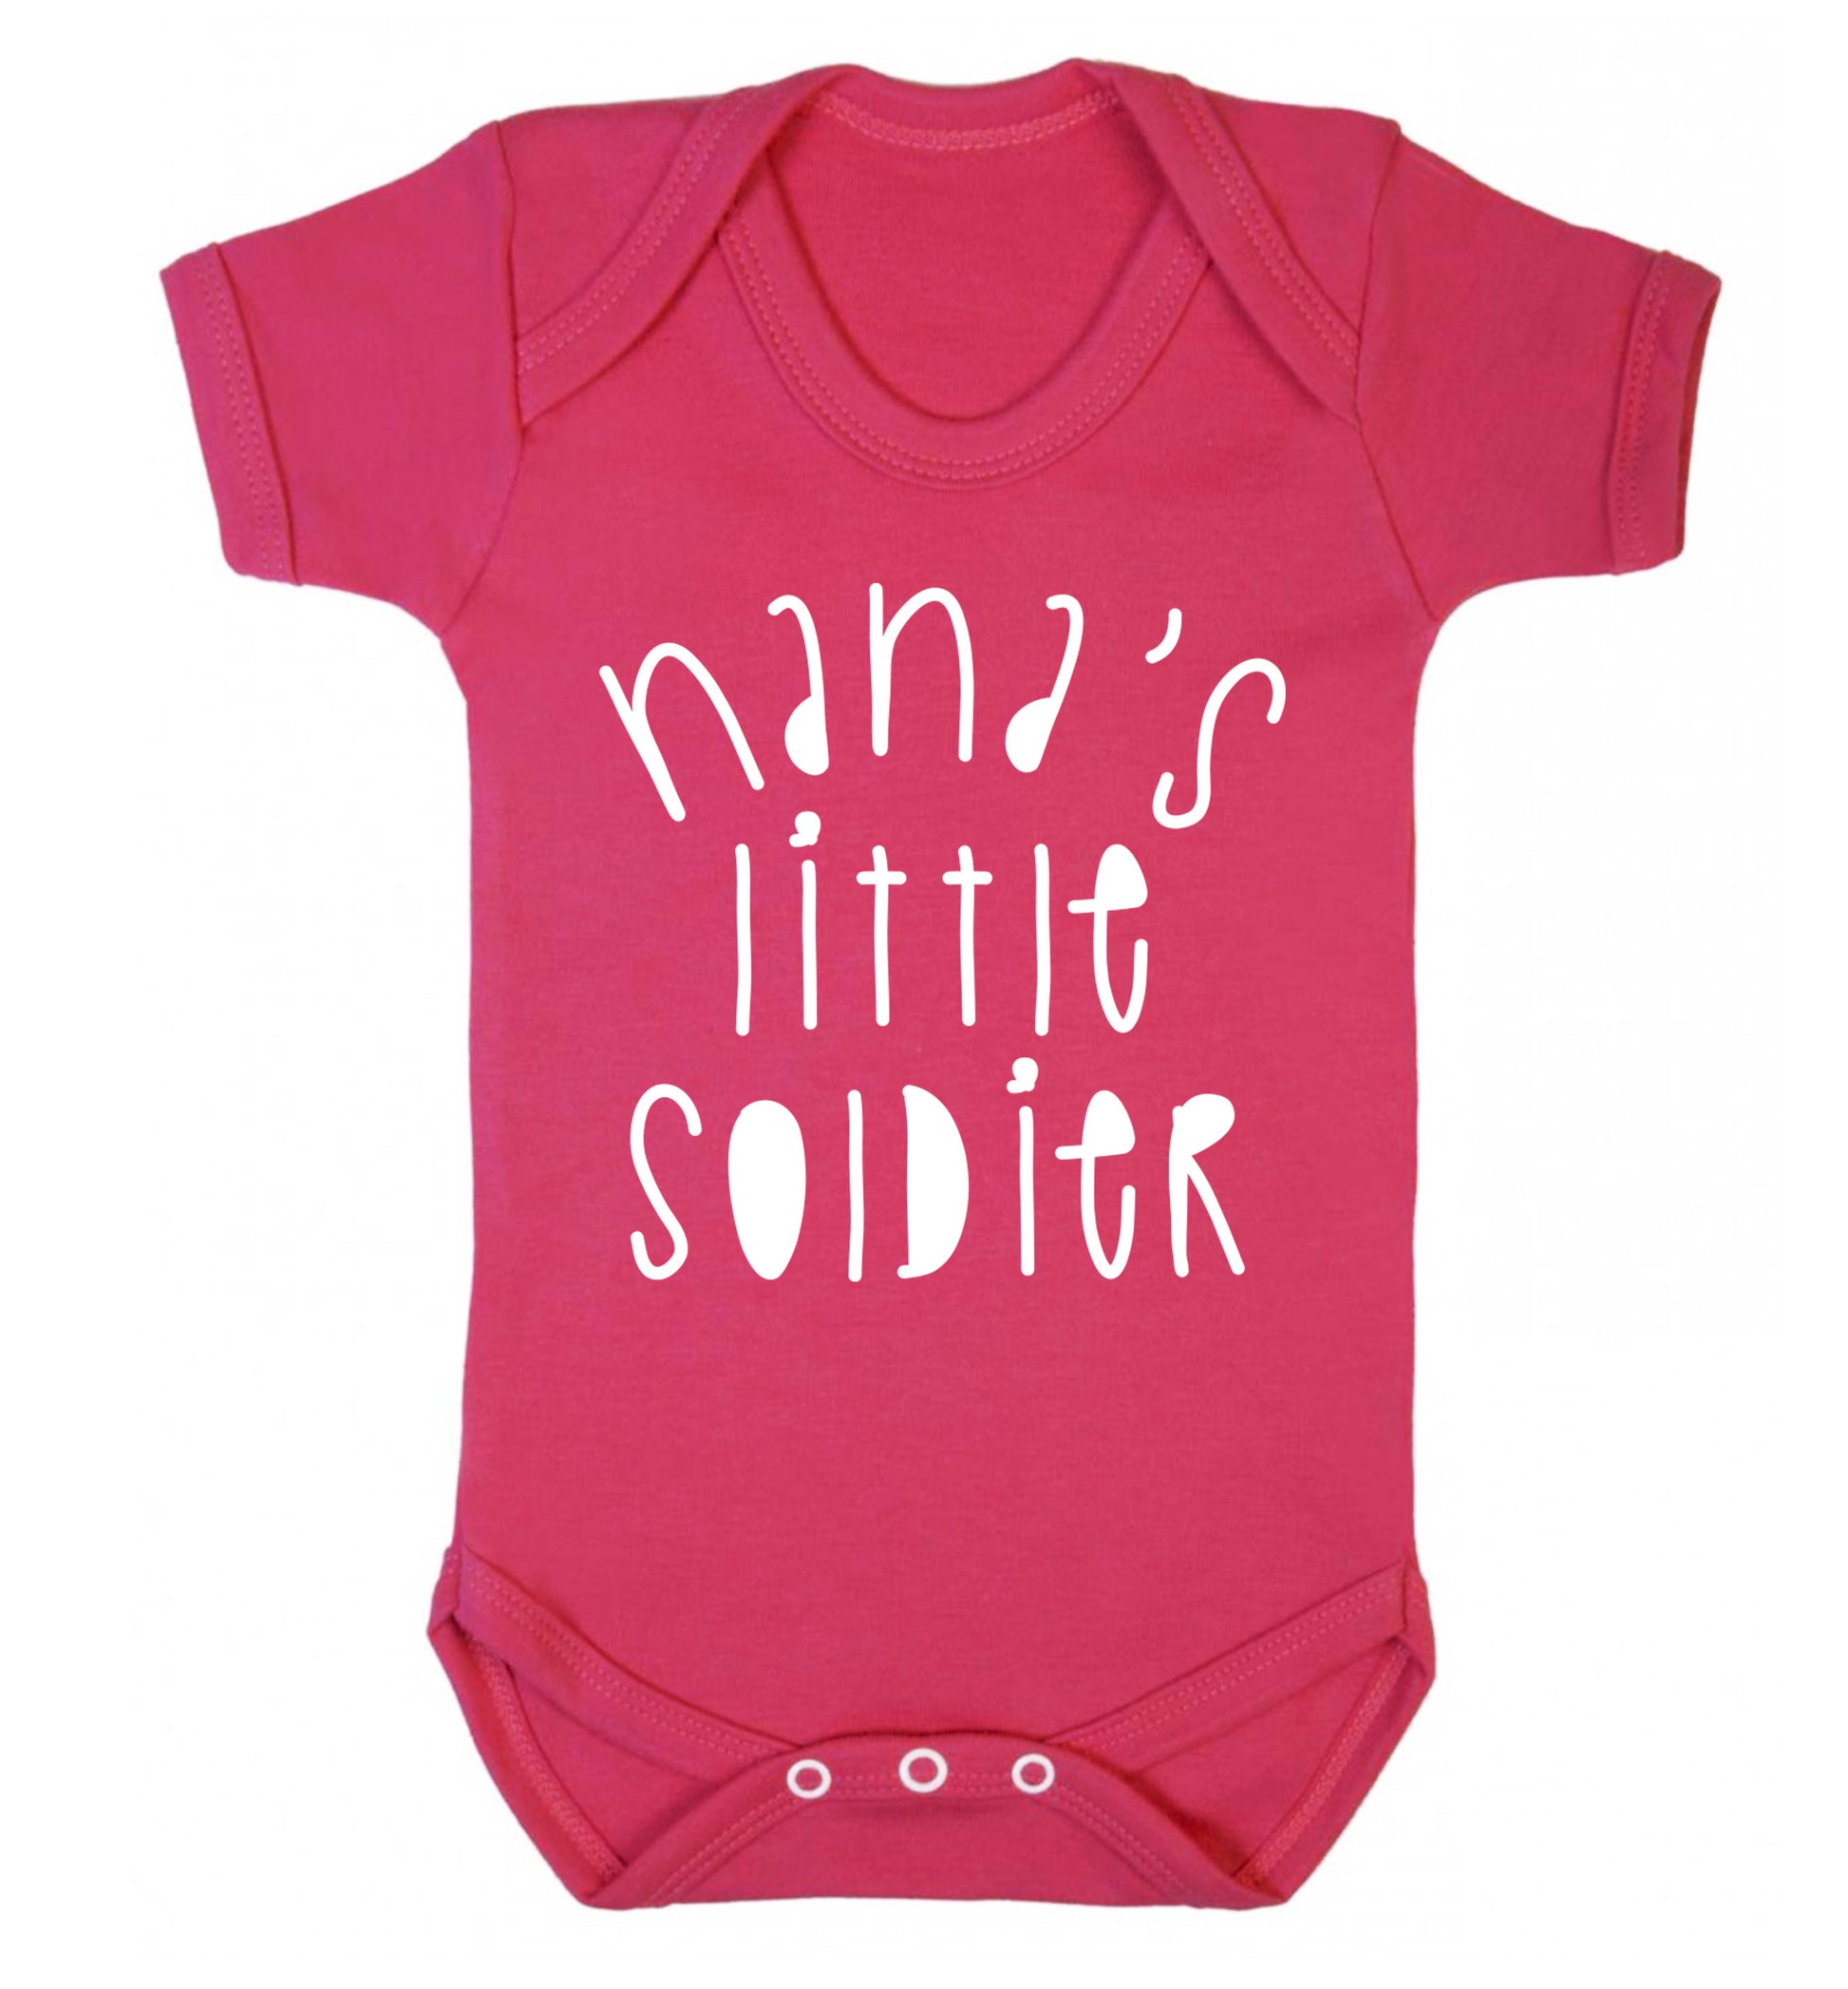 Nana's little soldier Baby Vest dark pink 18-24 months